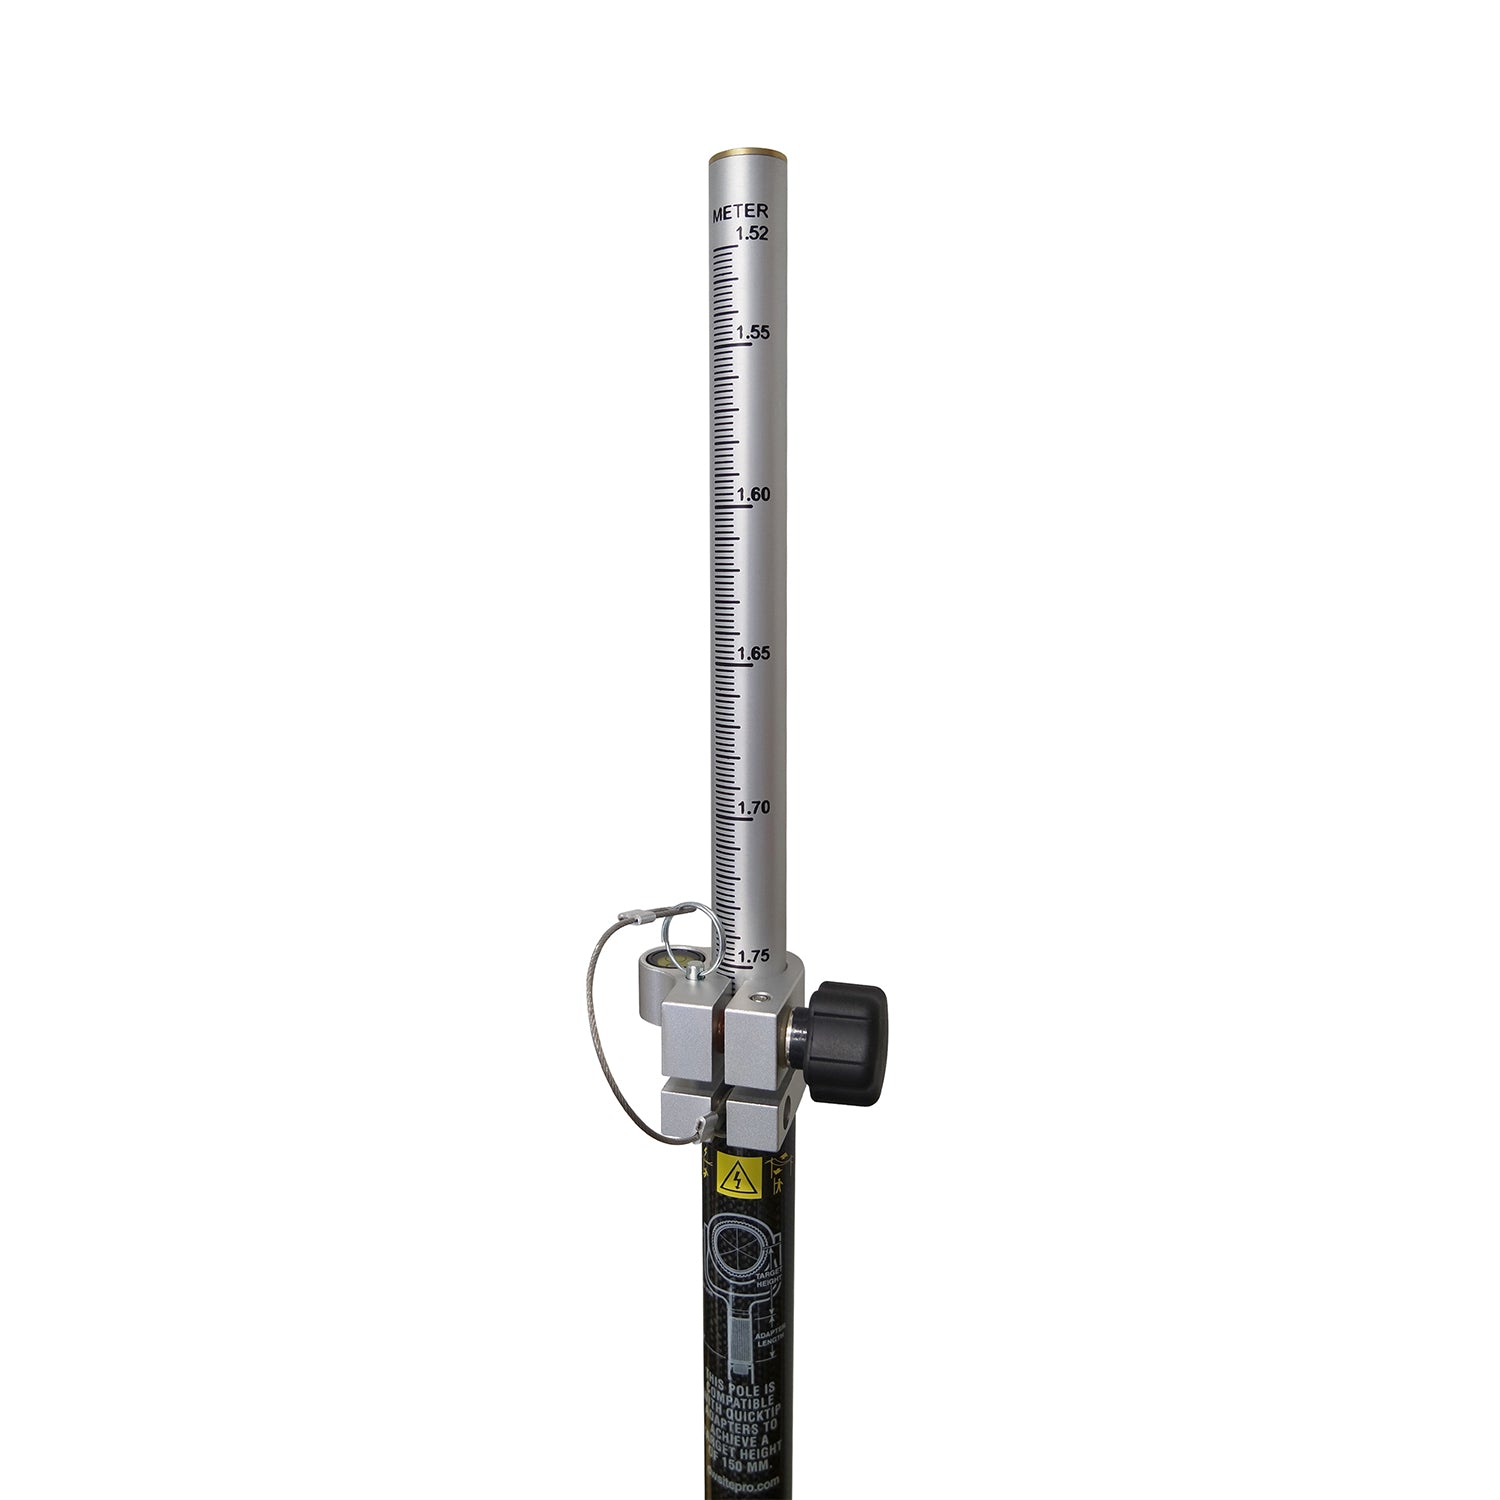 SitePro 2.6M Carbon Fiber Ultimate Topo Prism Pole -Rods, Poles & Accessories- eGPS Solutions Inc.